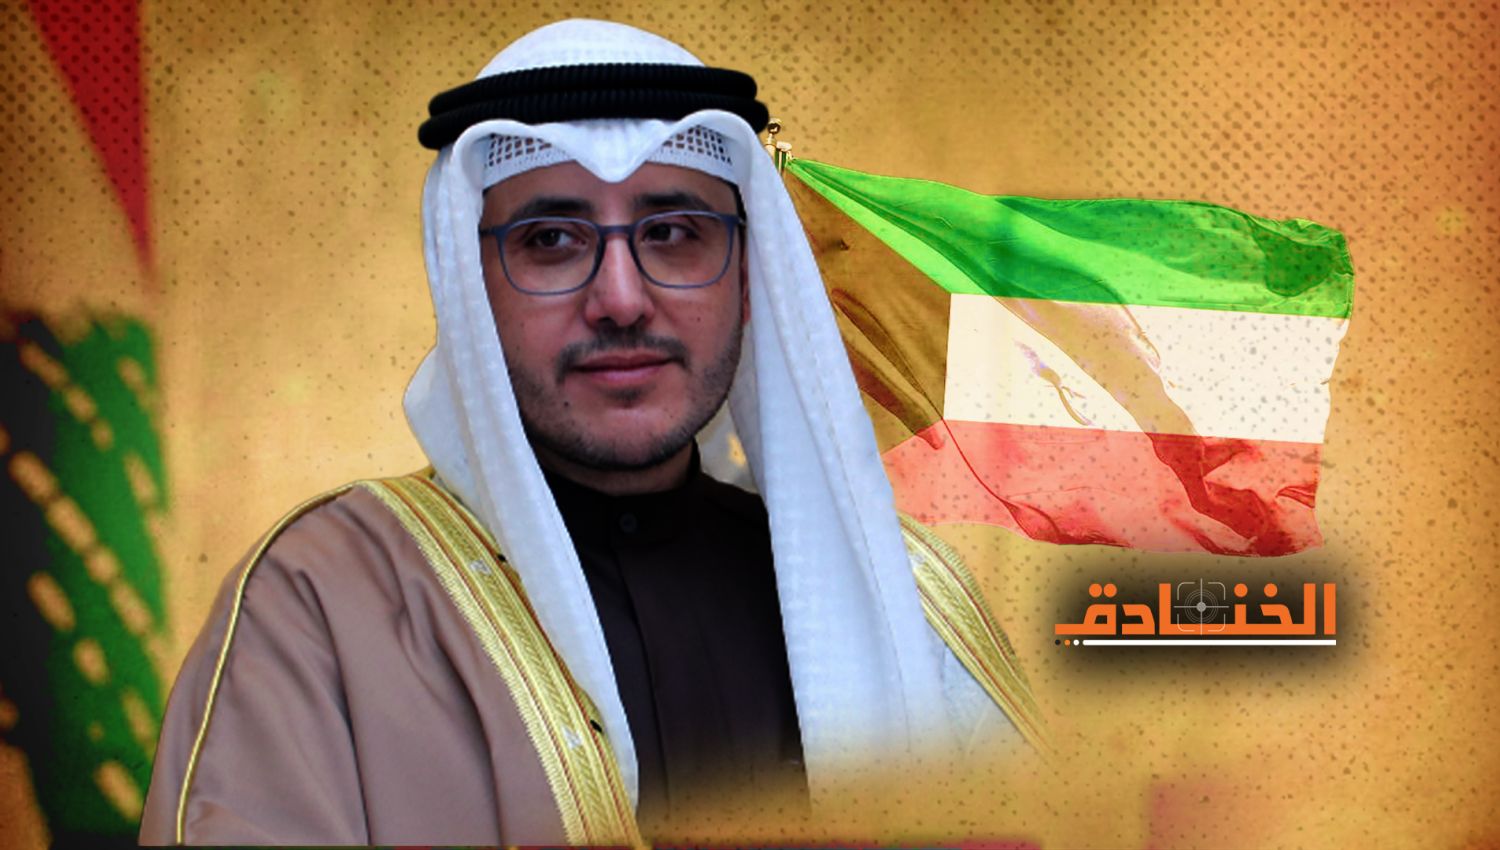 الكويت: شروط تعجيزية وخلط أوراق!